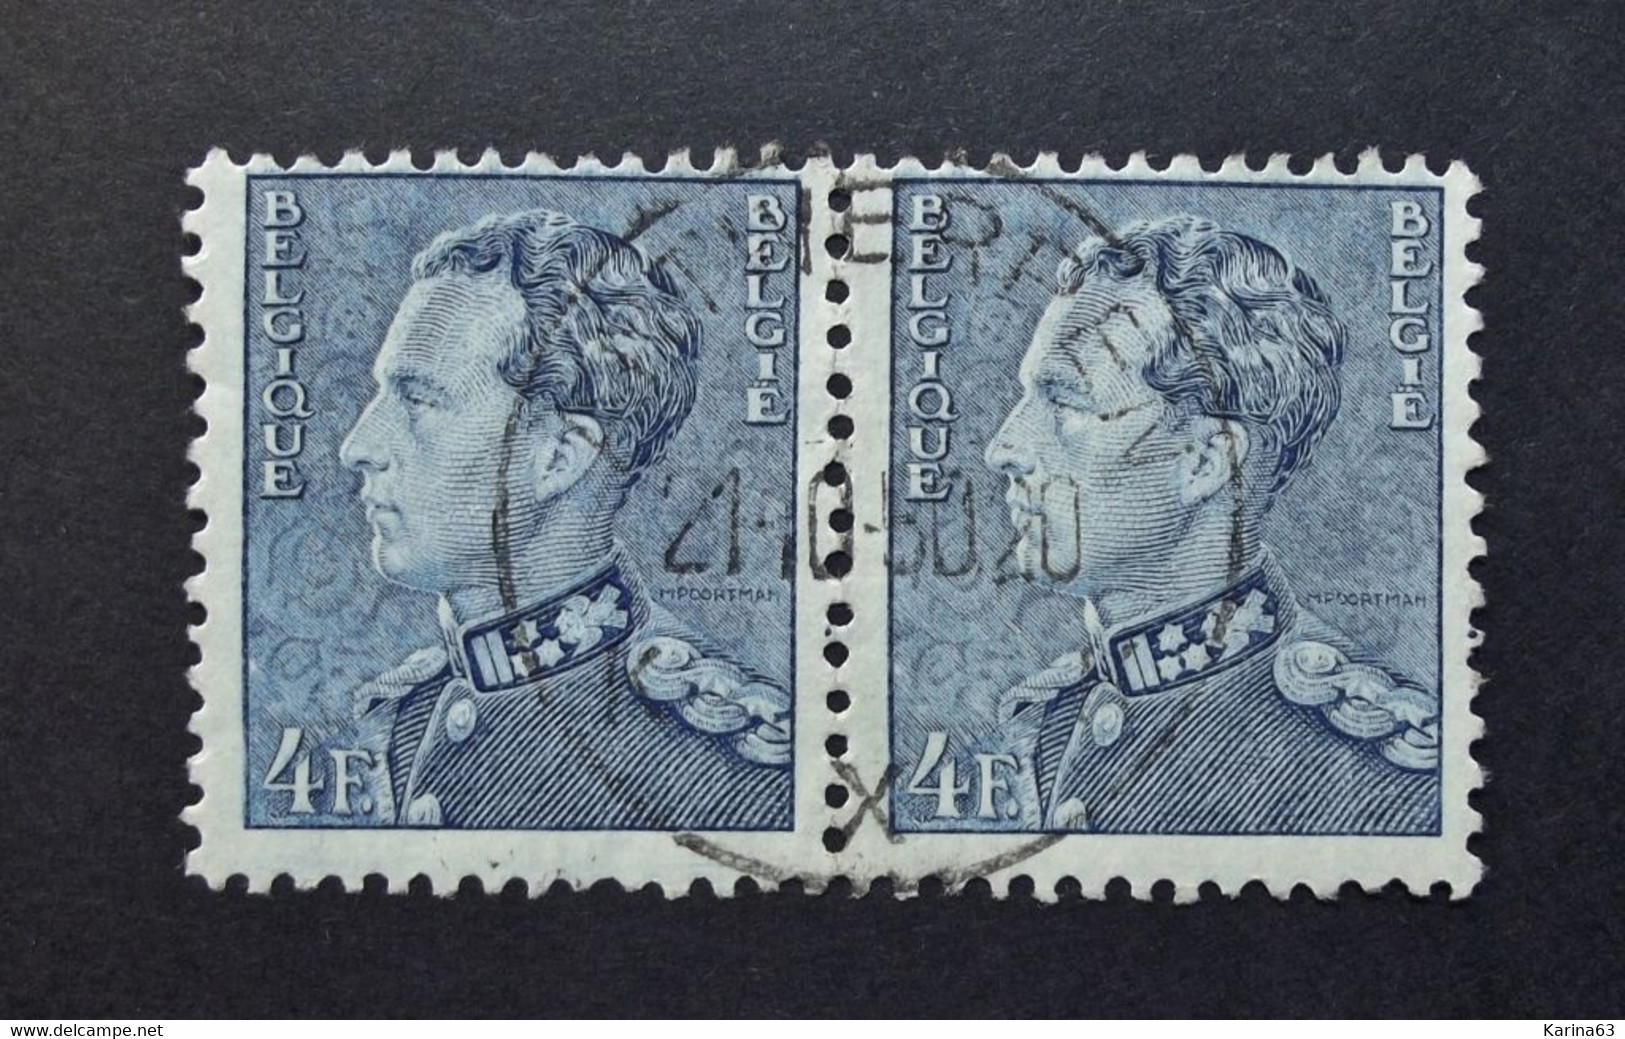 Belgie Belgique - 1950 - OPB/COB  N° 833  (2 Value) - Koning Leopold III  Poortman Obl. -  Antwerpen X . - Gebruikt